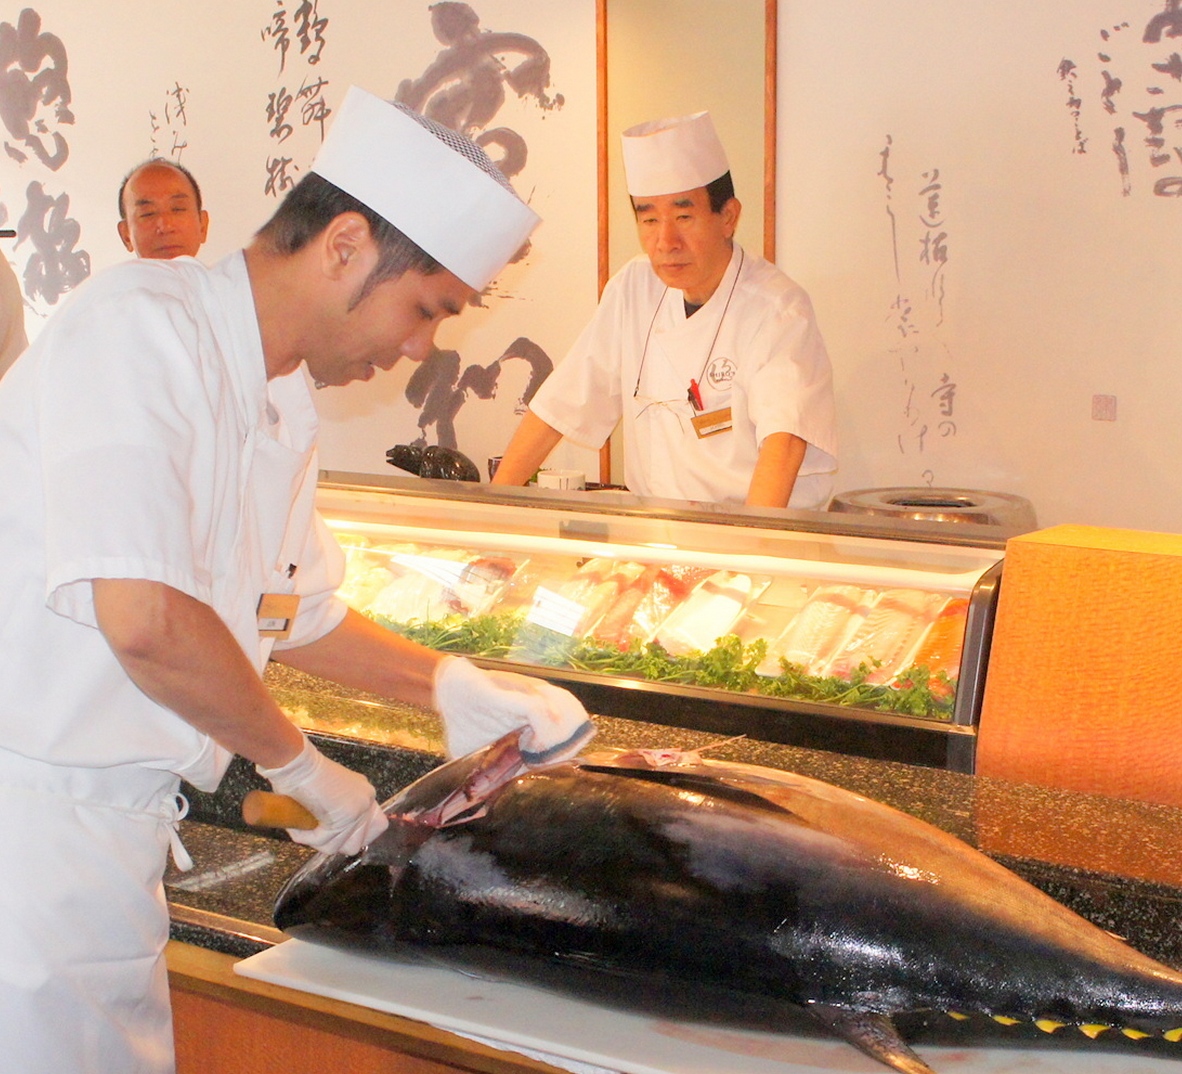 Takai starts cutting tuna. 